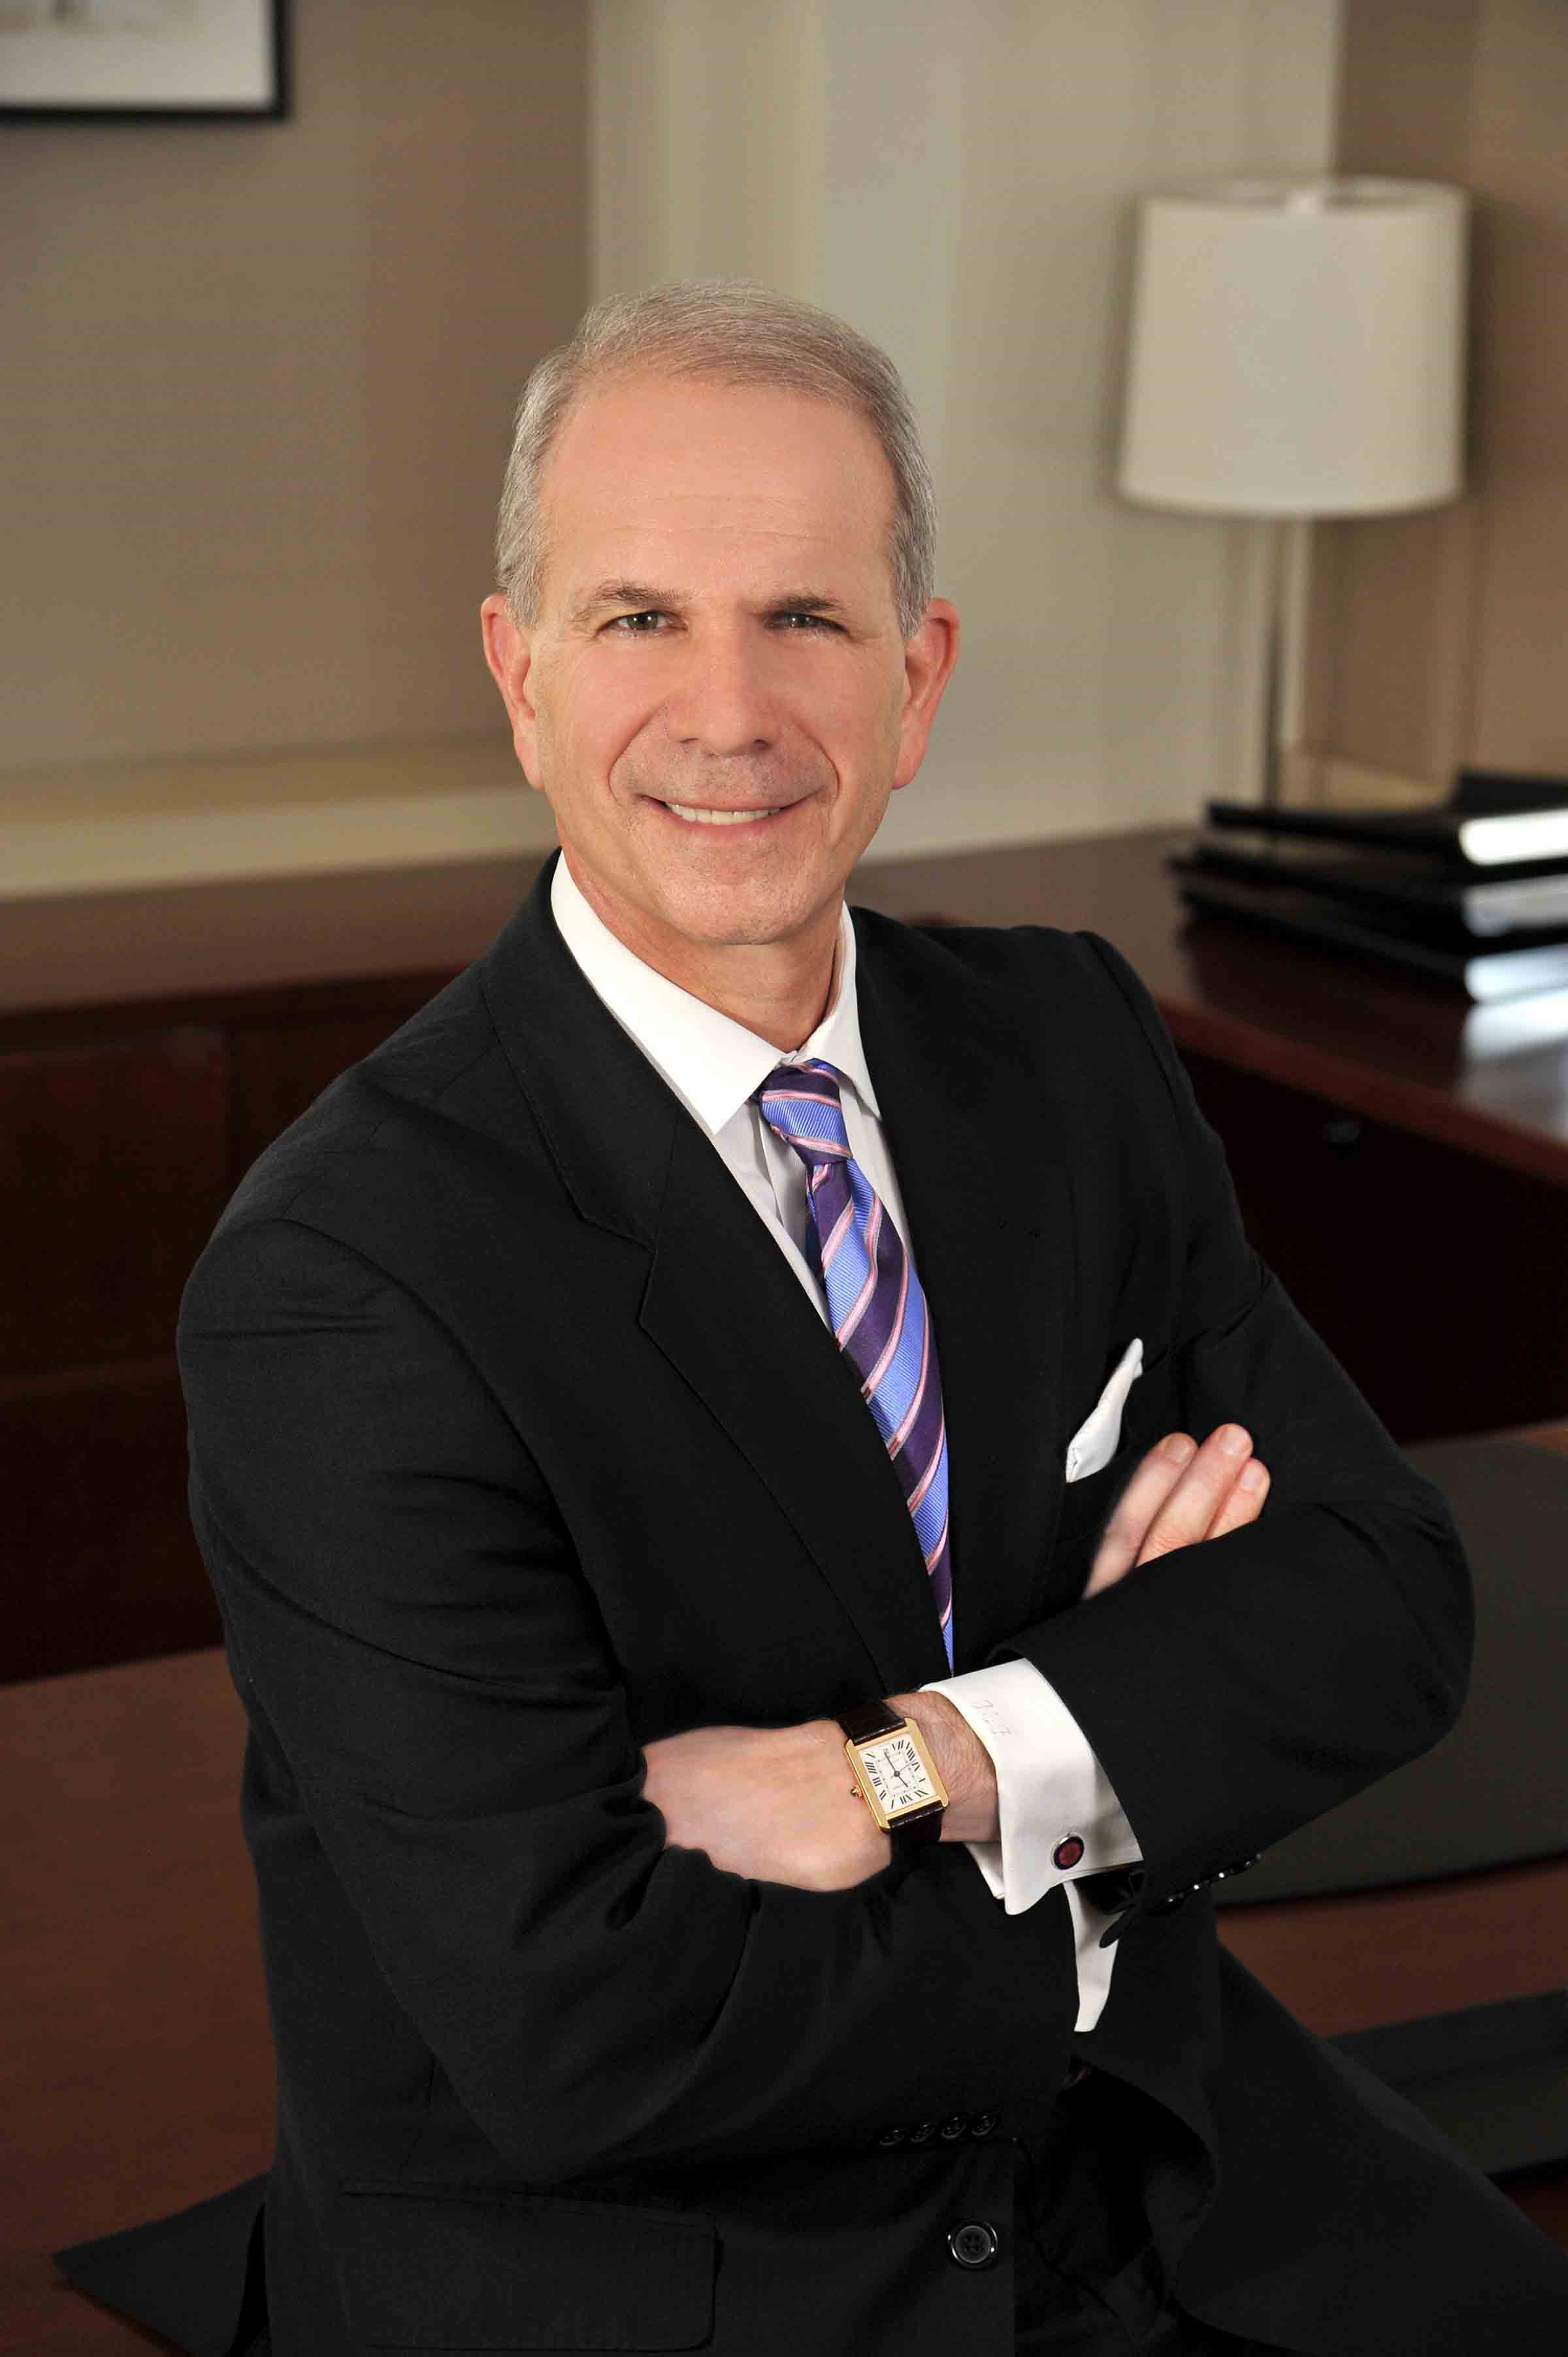 Deloitte CEO Frank Friedman